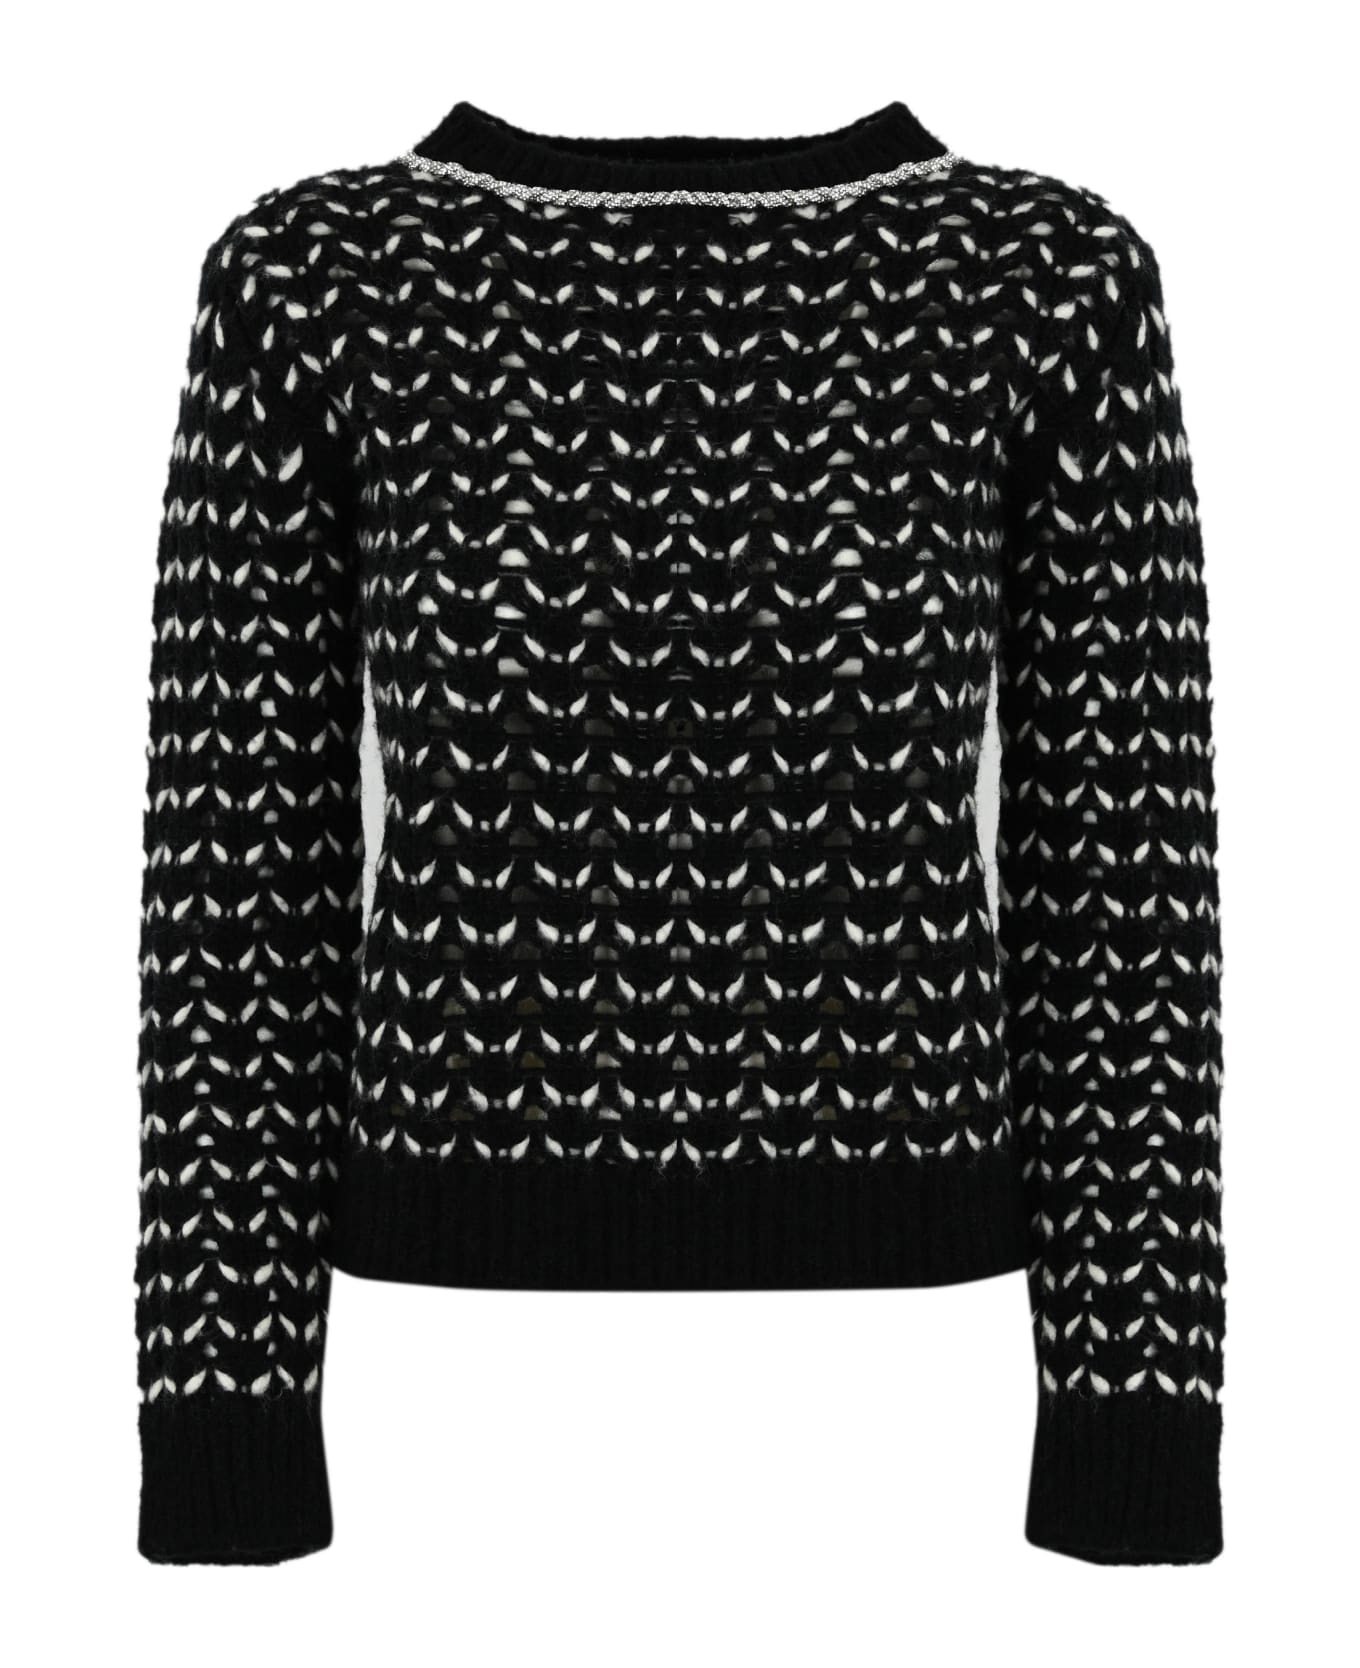 Max Mara Studio Wool Yarn Sweater - Black/white ニットウェア